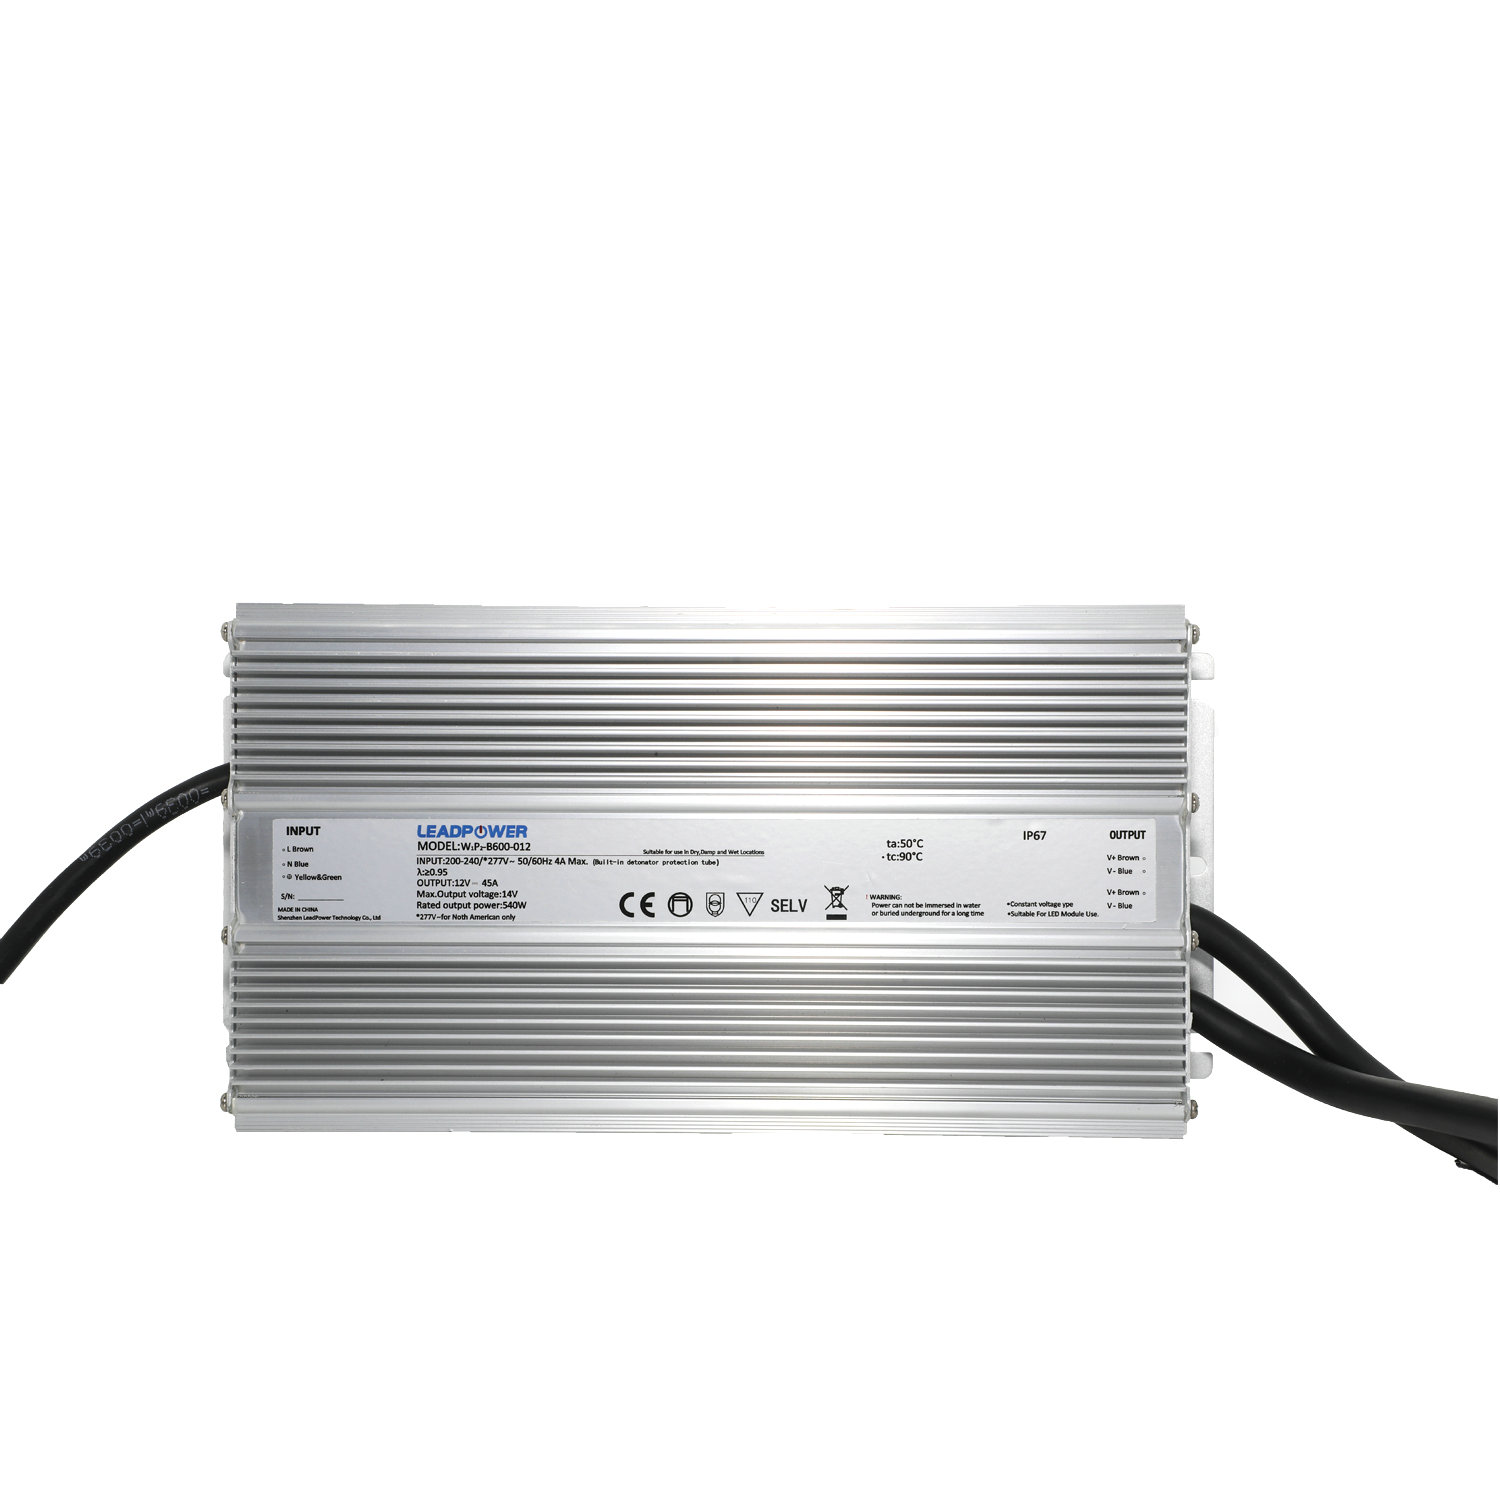 WBP-B600 Series Waterproof LED Power Supply